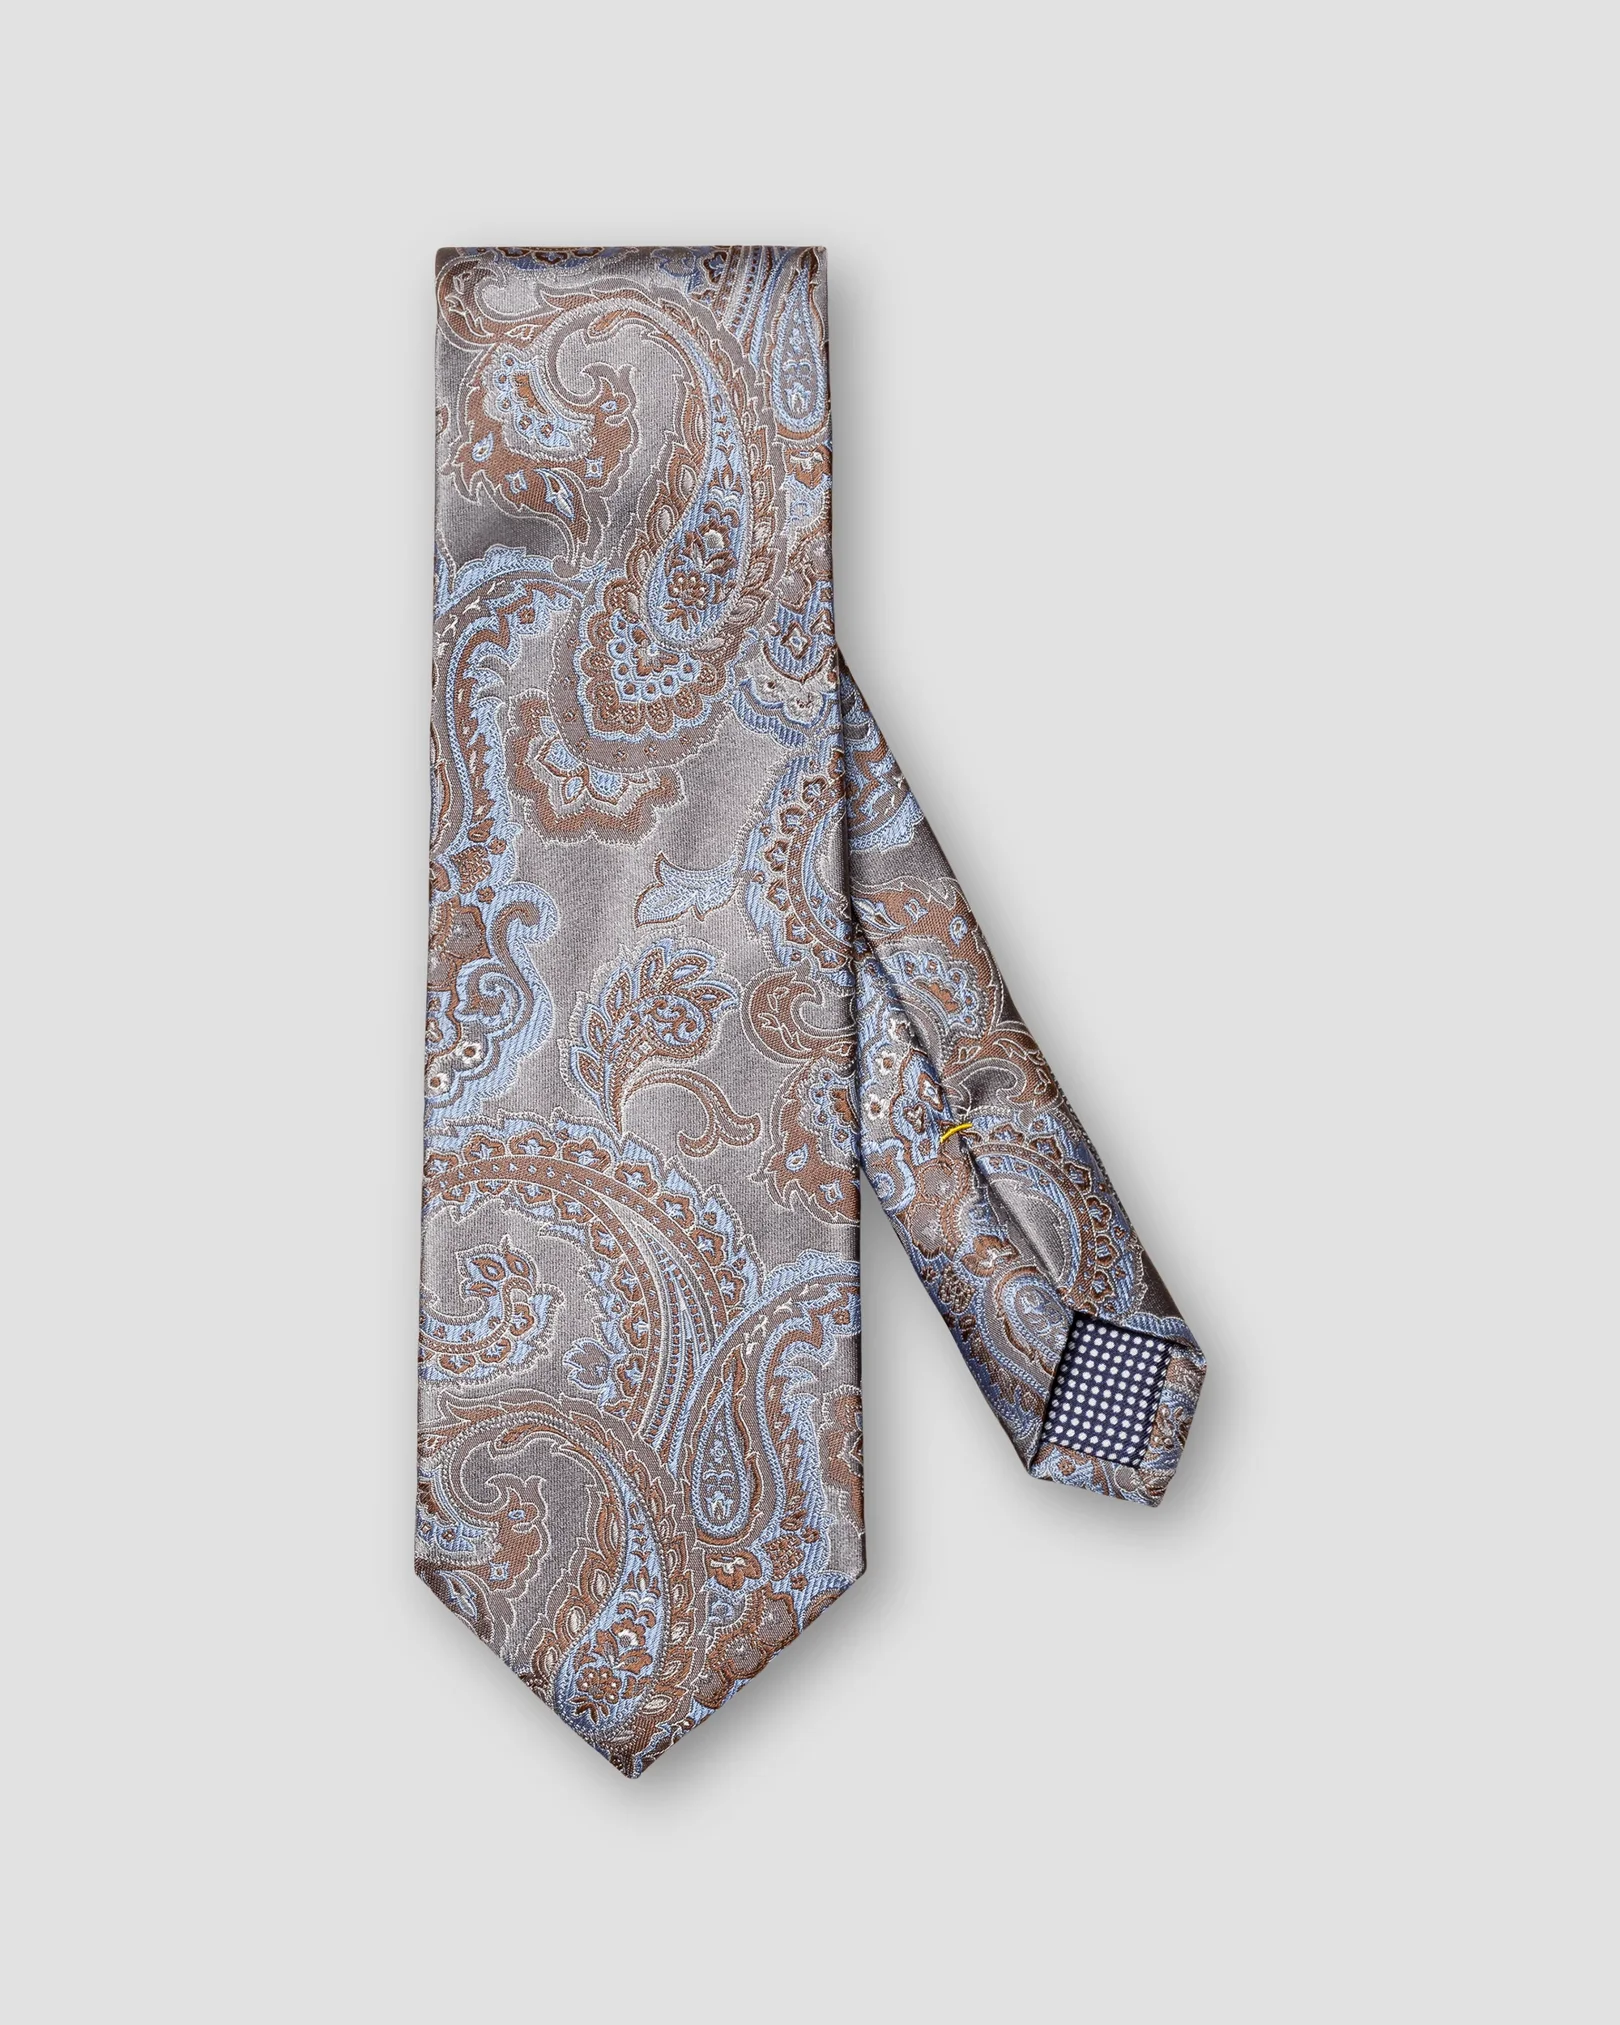 Cravate jacquard grise motifs cachemire